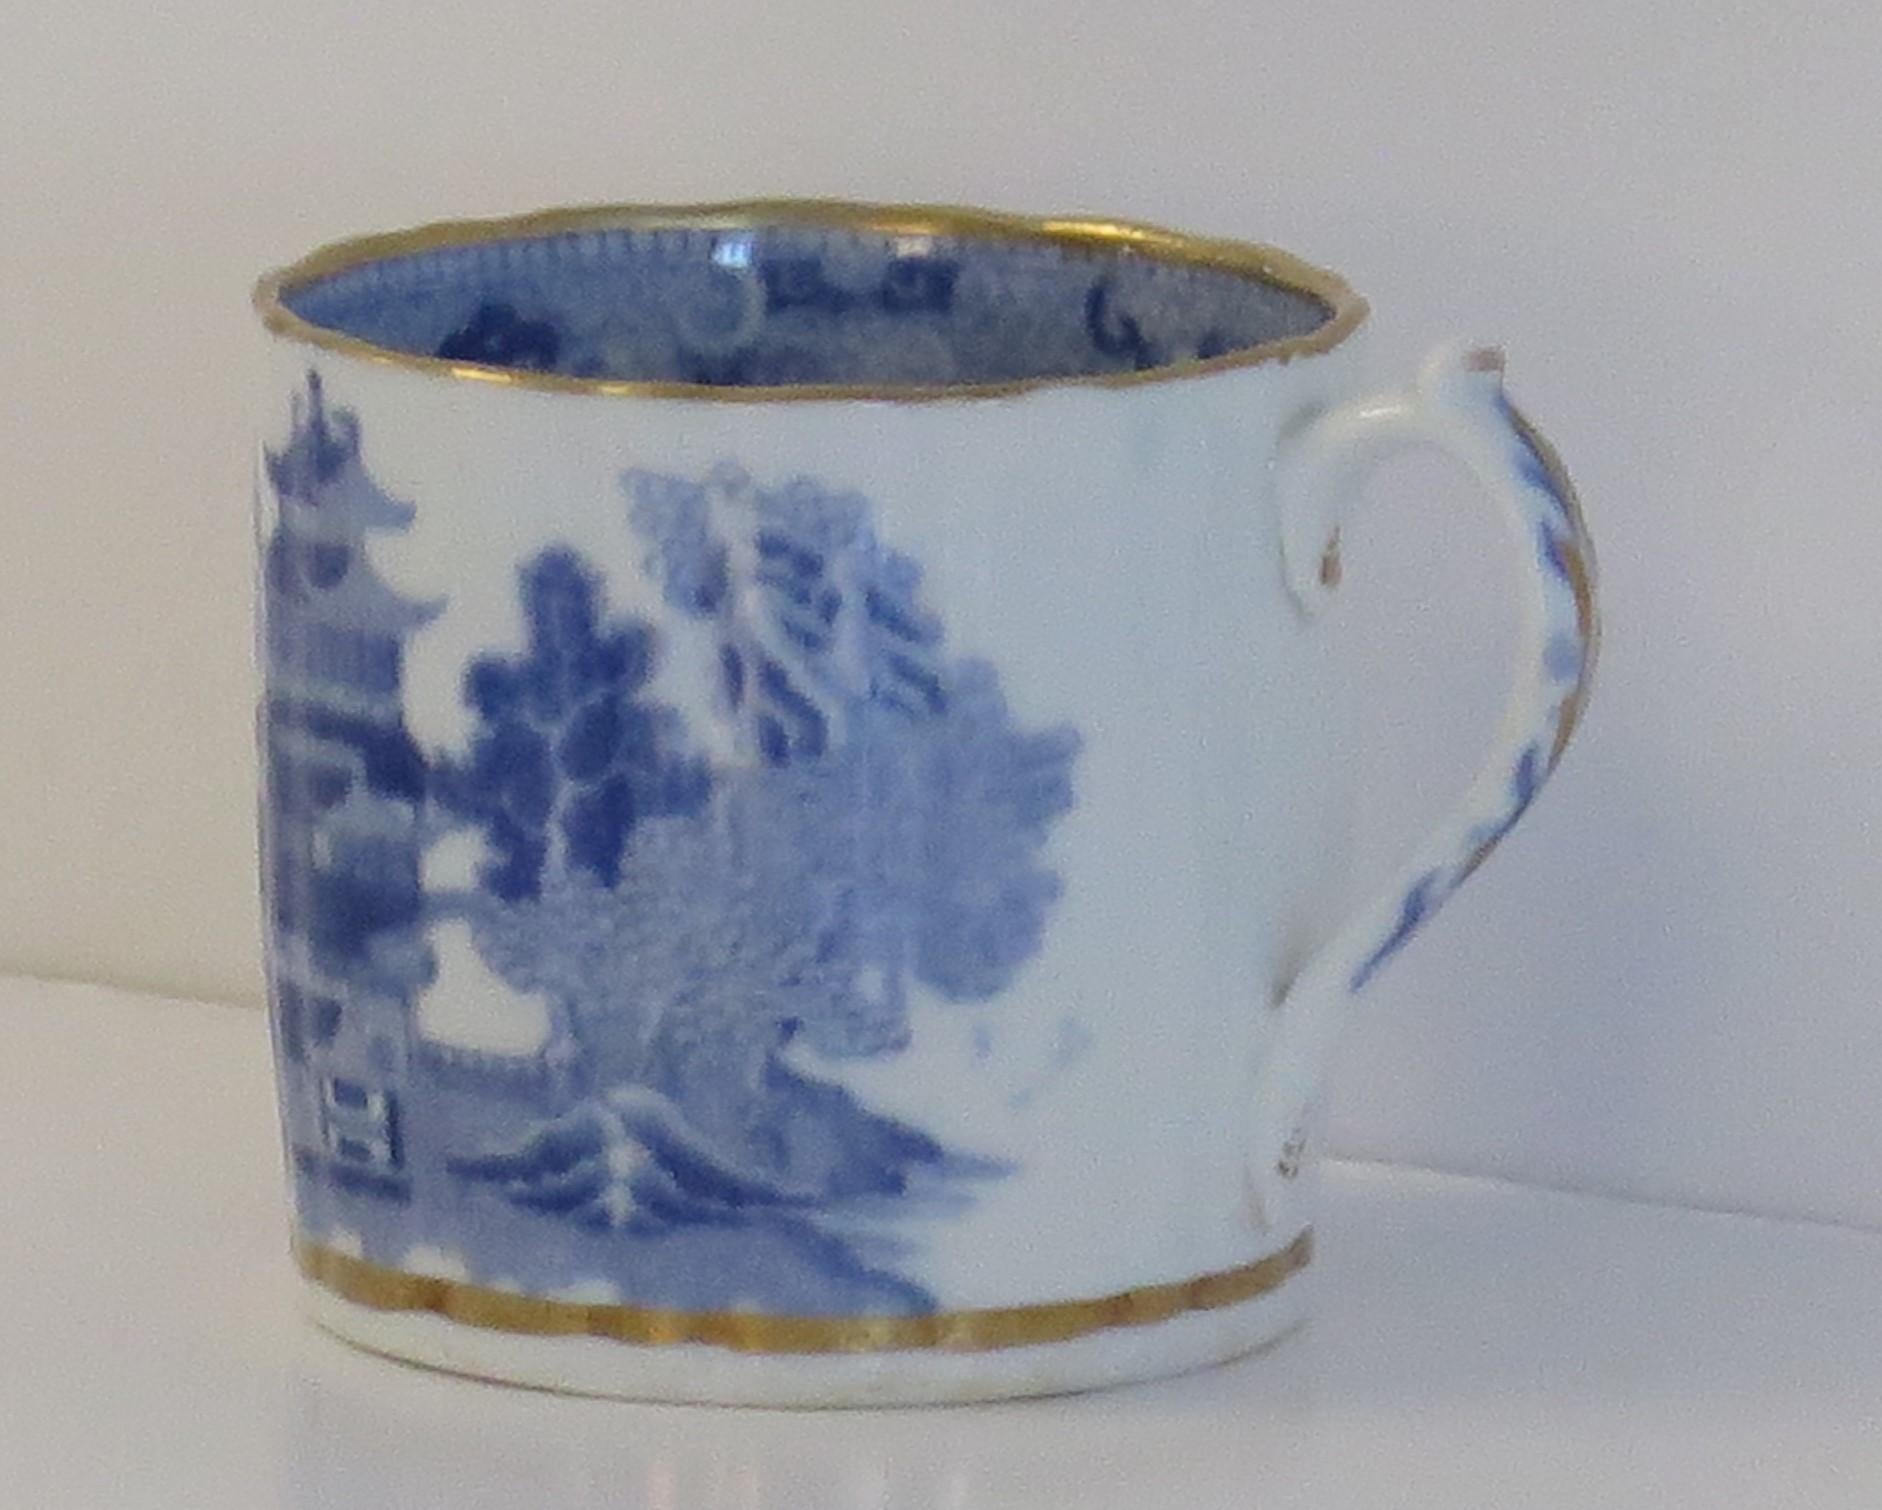 Il s'agit d'une boîte à café en porcelaine bleue et blanche, dorée, fabriquée par Miles Mason (Mason's), Staffordshire Potteries, au début du 19e siècle, période Whiting, vers 1805-1810.

La pièce est bien potassée avec des cannelures verticales,